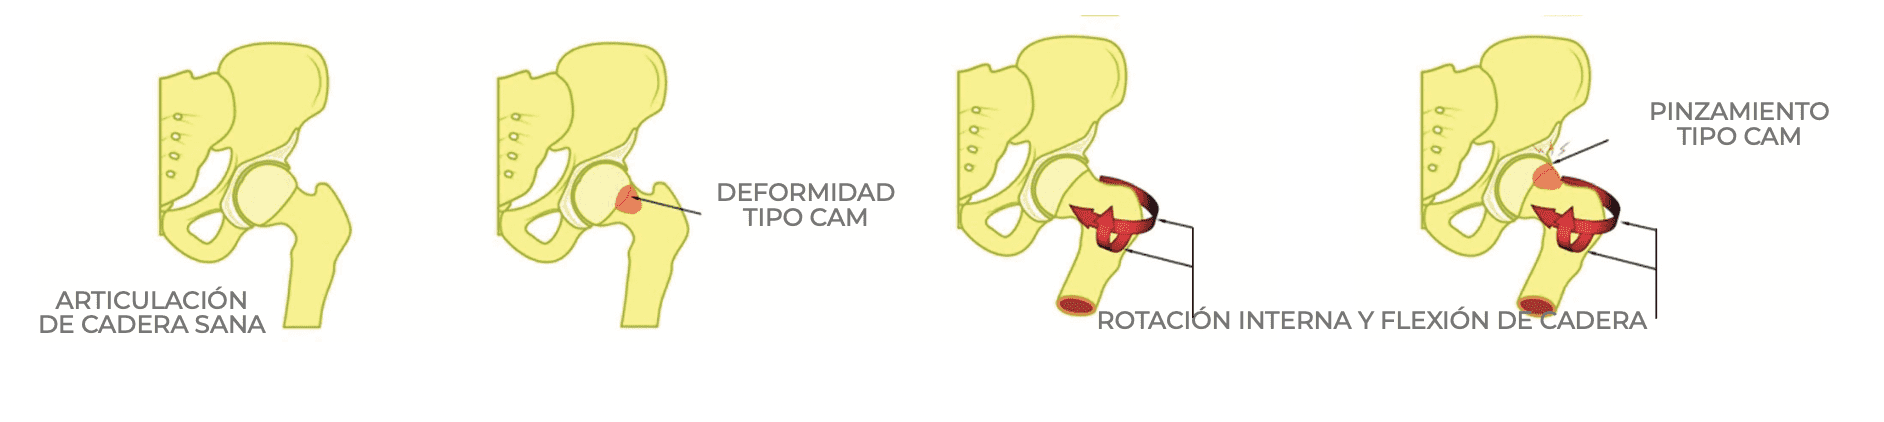 Artrosis de cadera tipo cam femoral